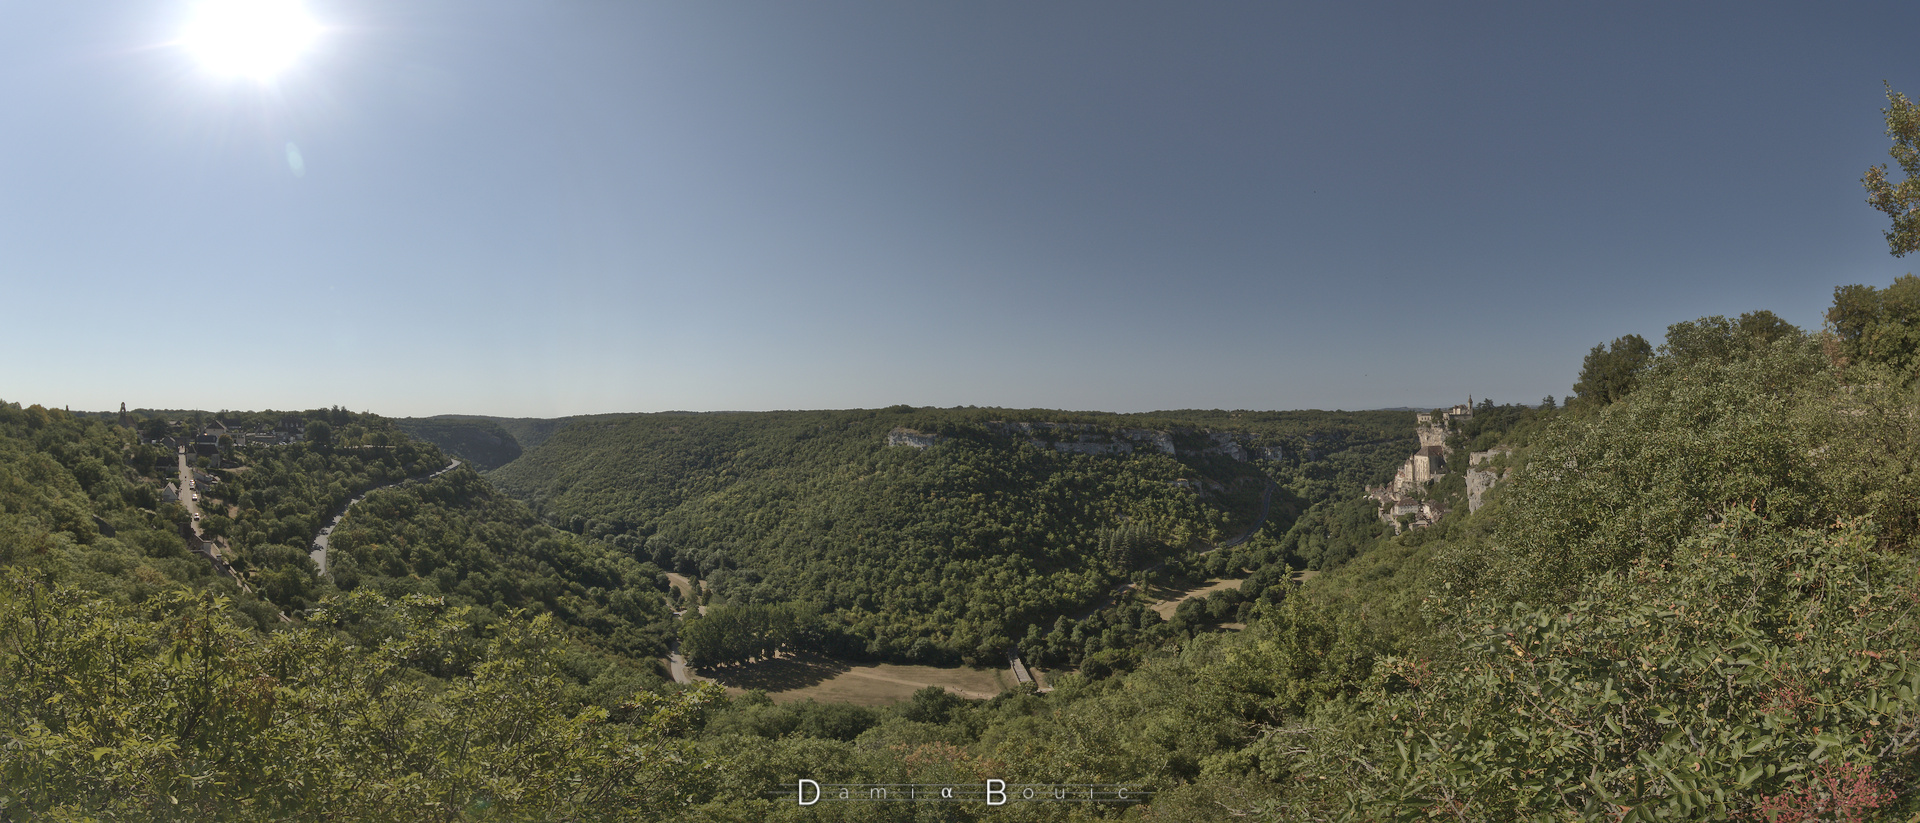 Panorama à 180° sur la vallée, profonde et encaissée, recouverte presque intégralement d'une forêt de feuillus. Quelques rochers émergent vers le milieu en haut. A droite toute, la cité de Rocamadour, accrochée à sa falaise éternelle et sacrée